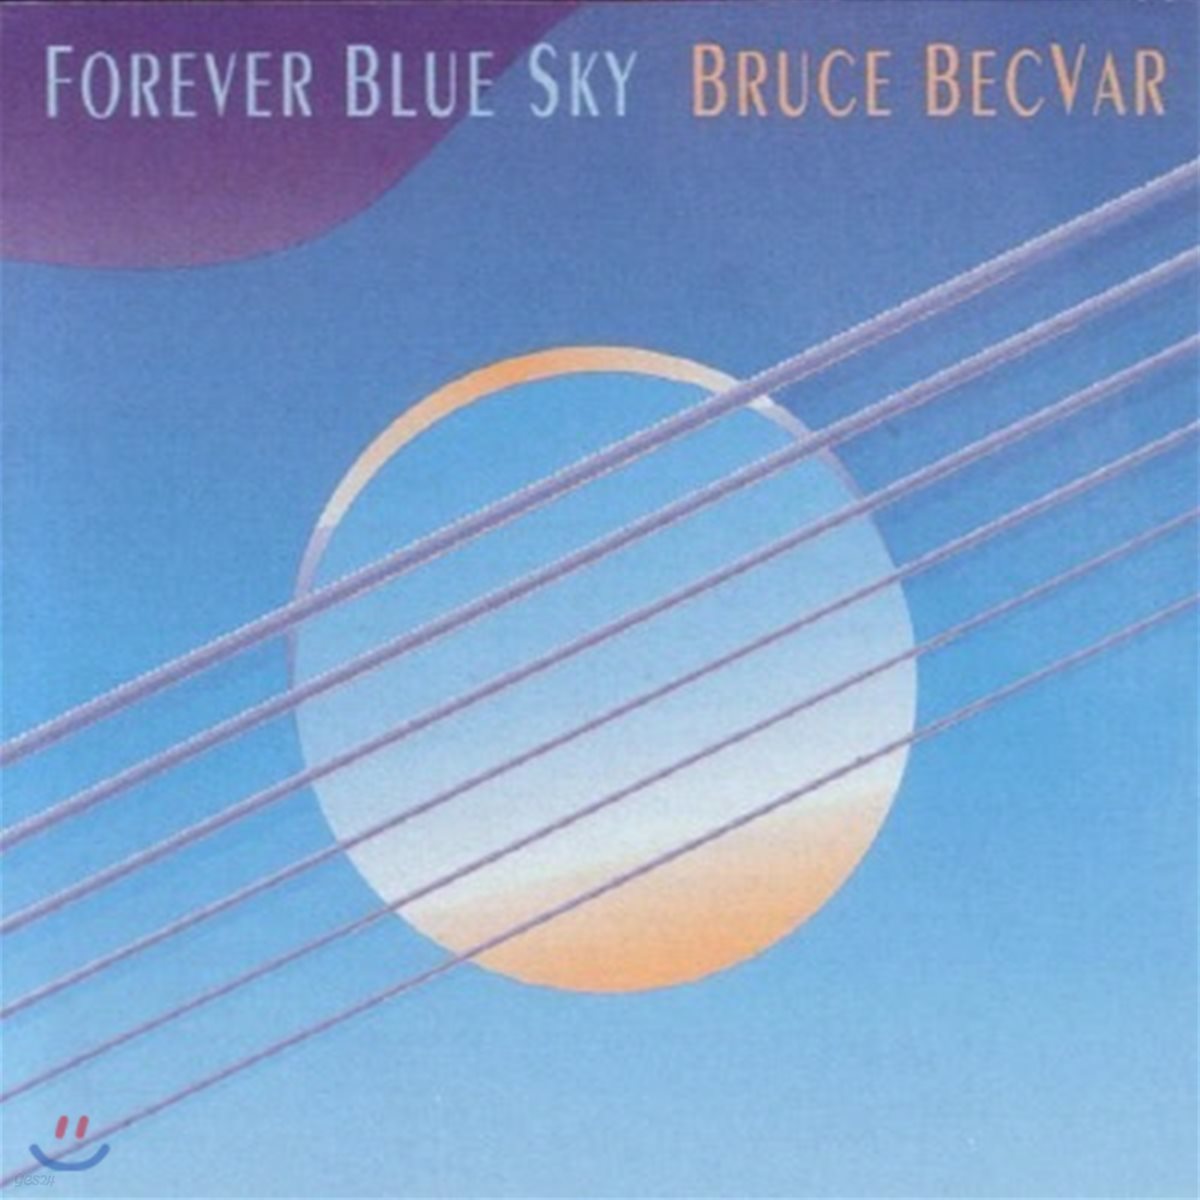 [중고] Bruce Becvar / Forever Blue Sky (수입)